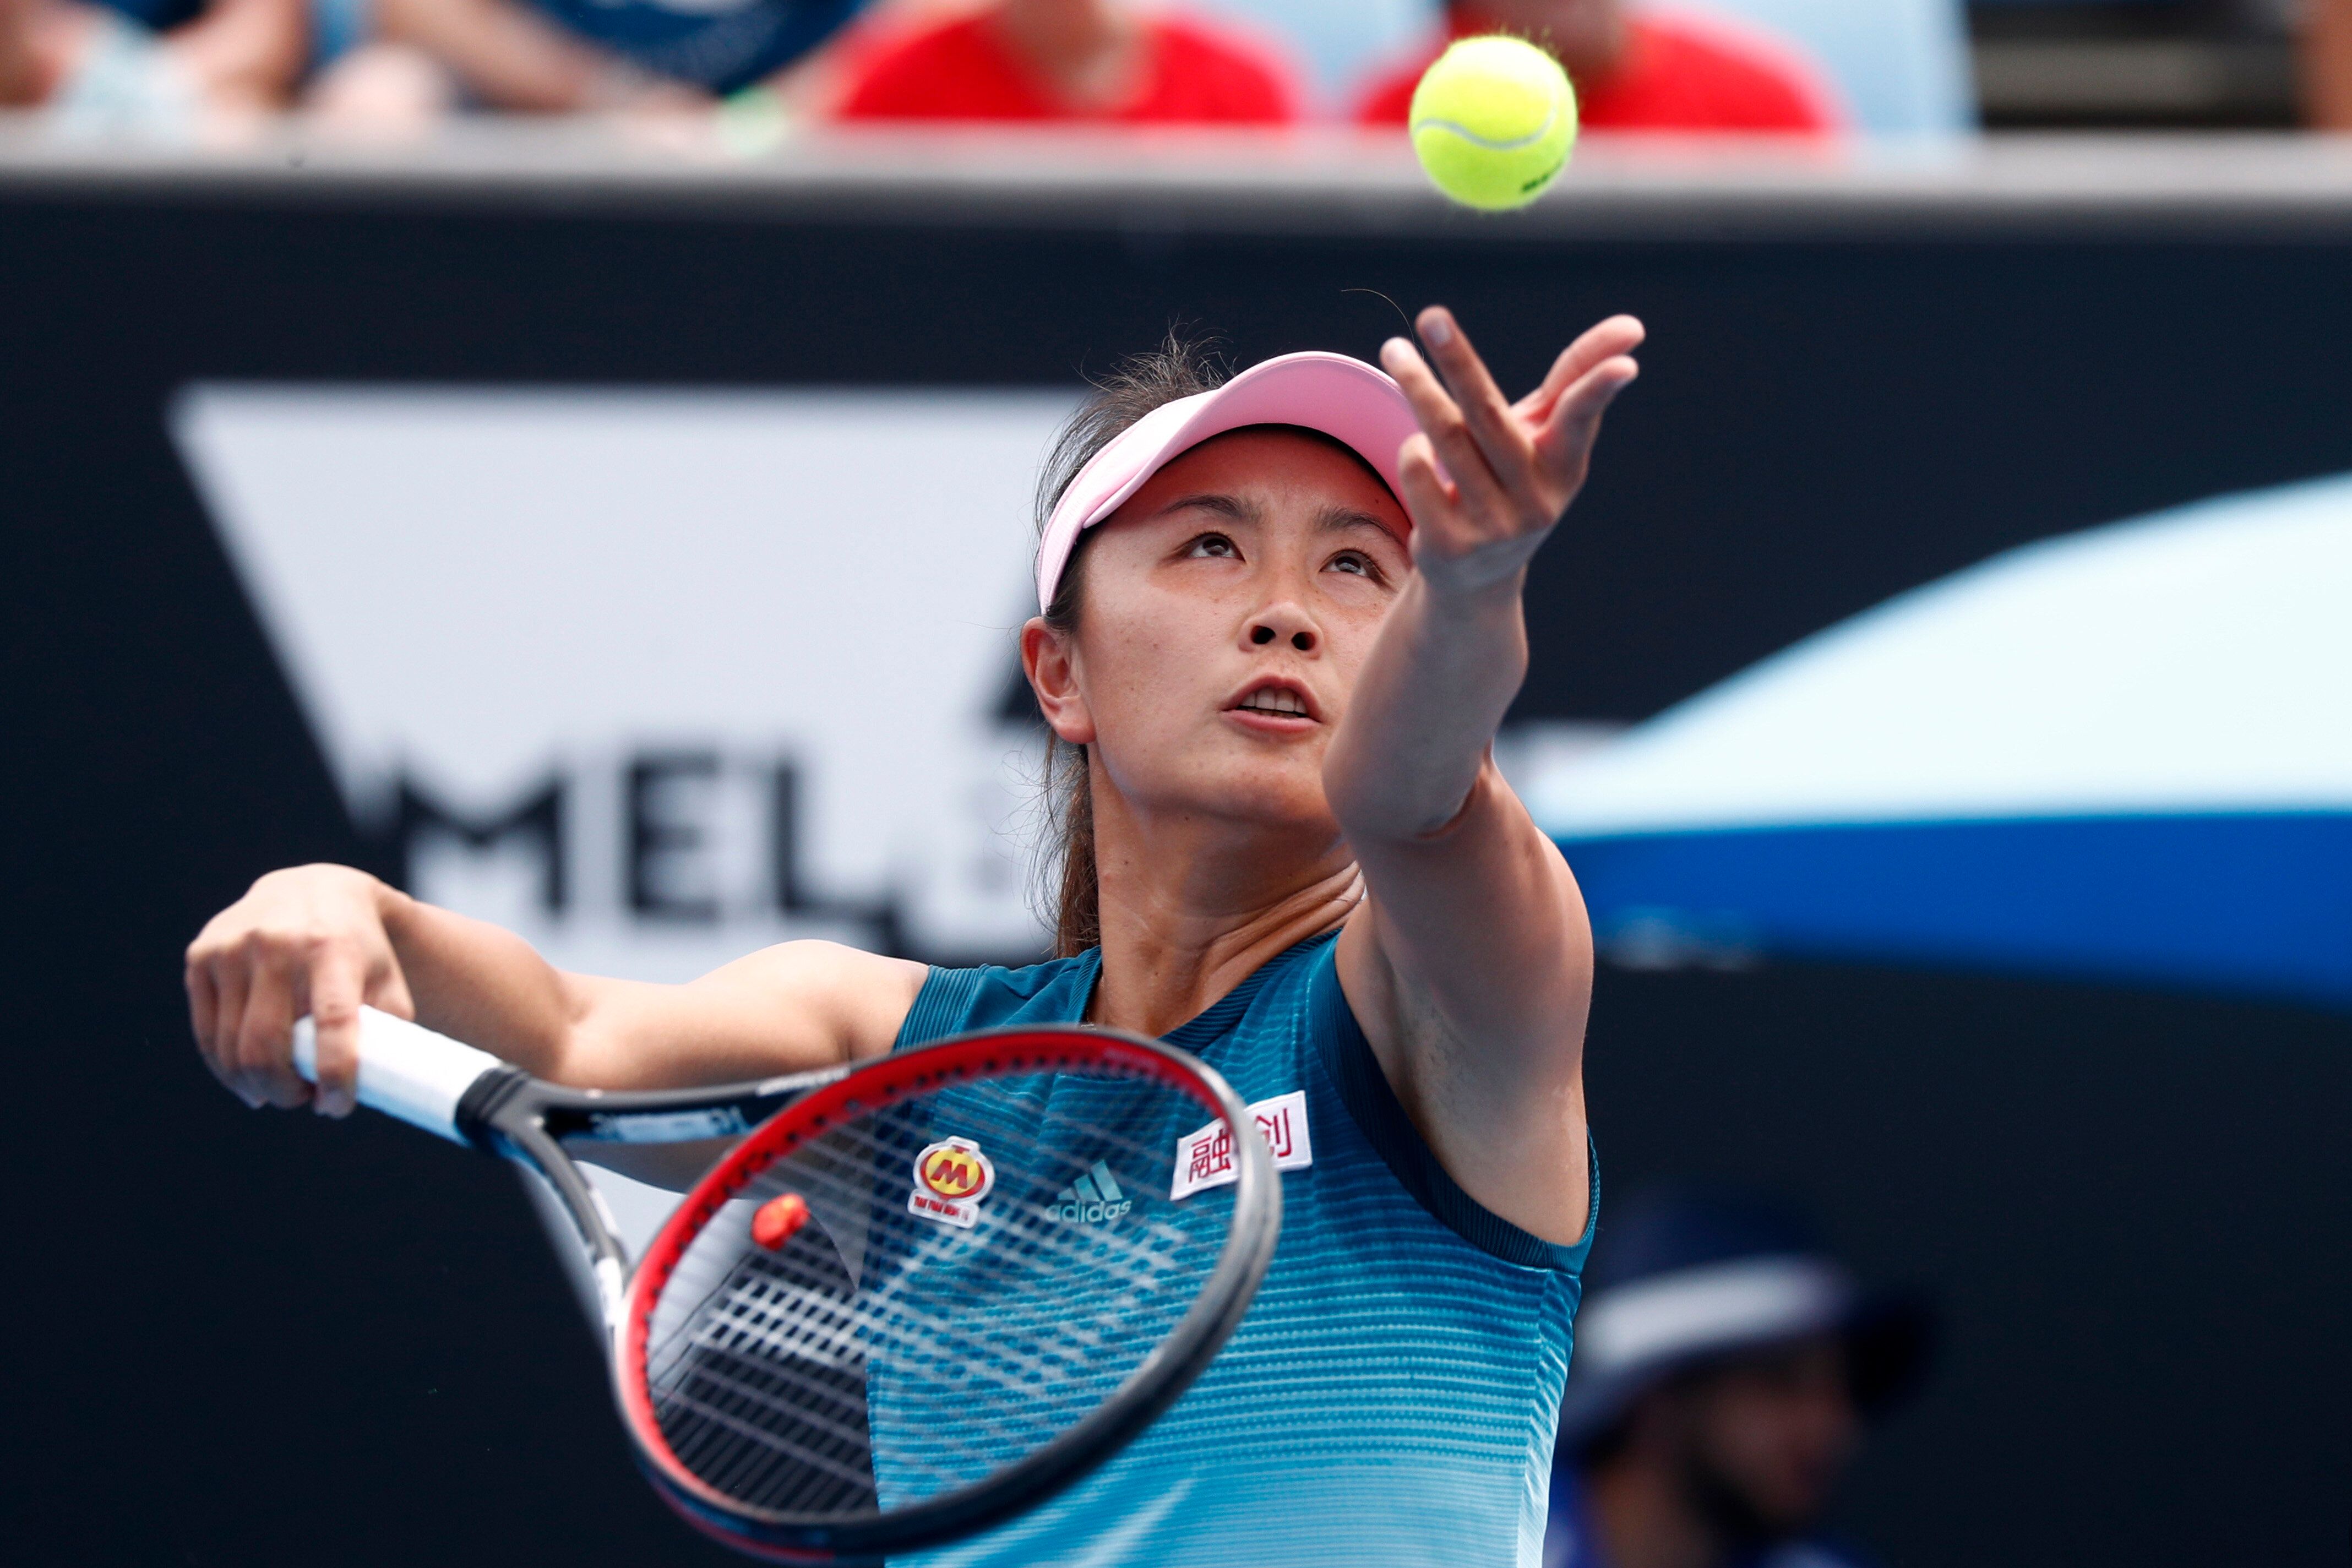 Les compétitions de tennis féminin suspendues en Chine après l'affaire Peng Shuai...